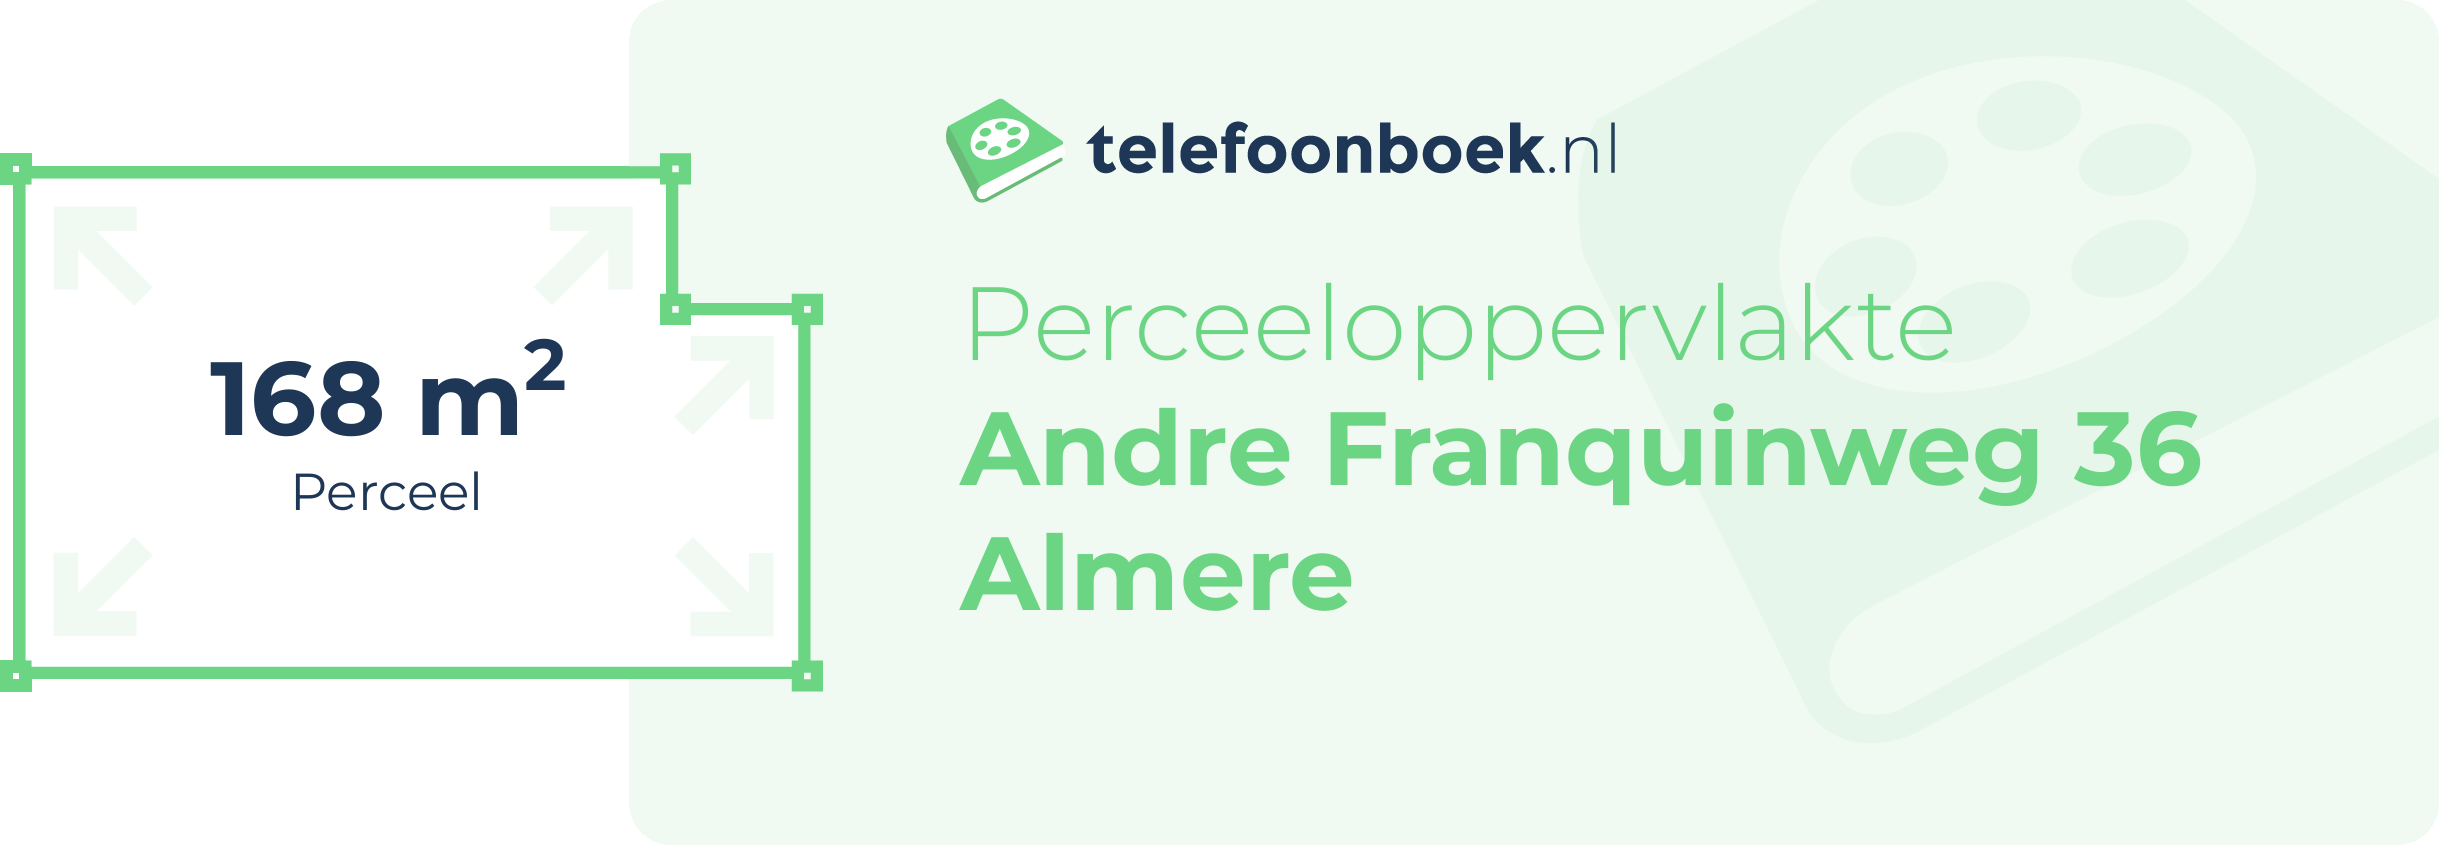 Perceeloppervlakte Andre Franquinweg 36 Almere